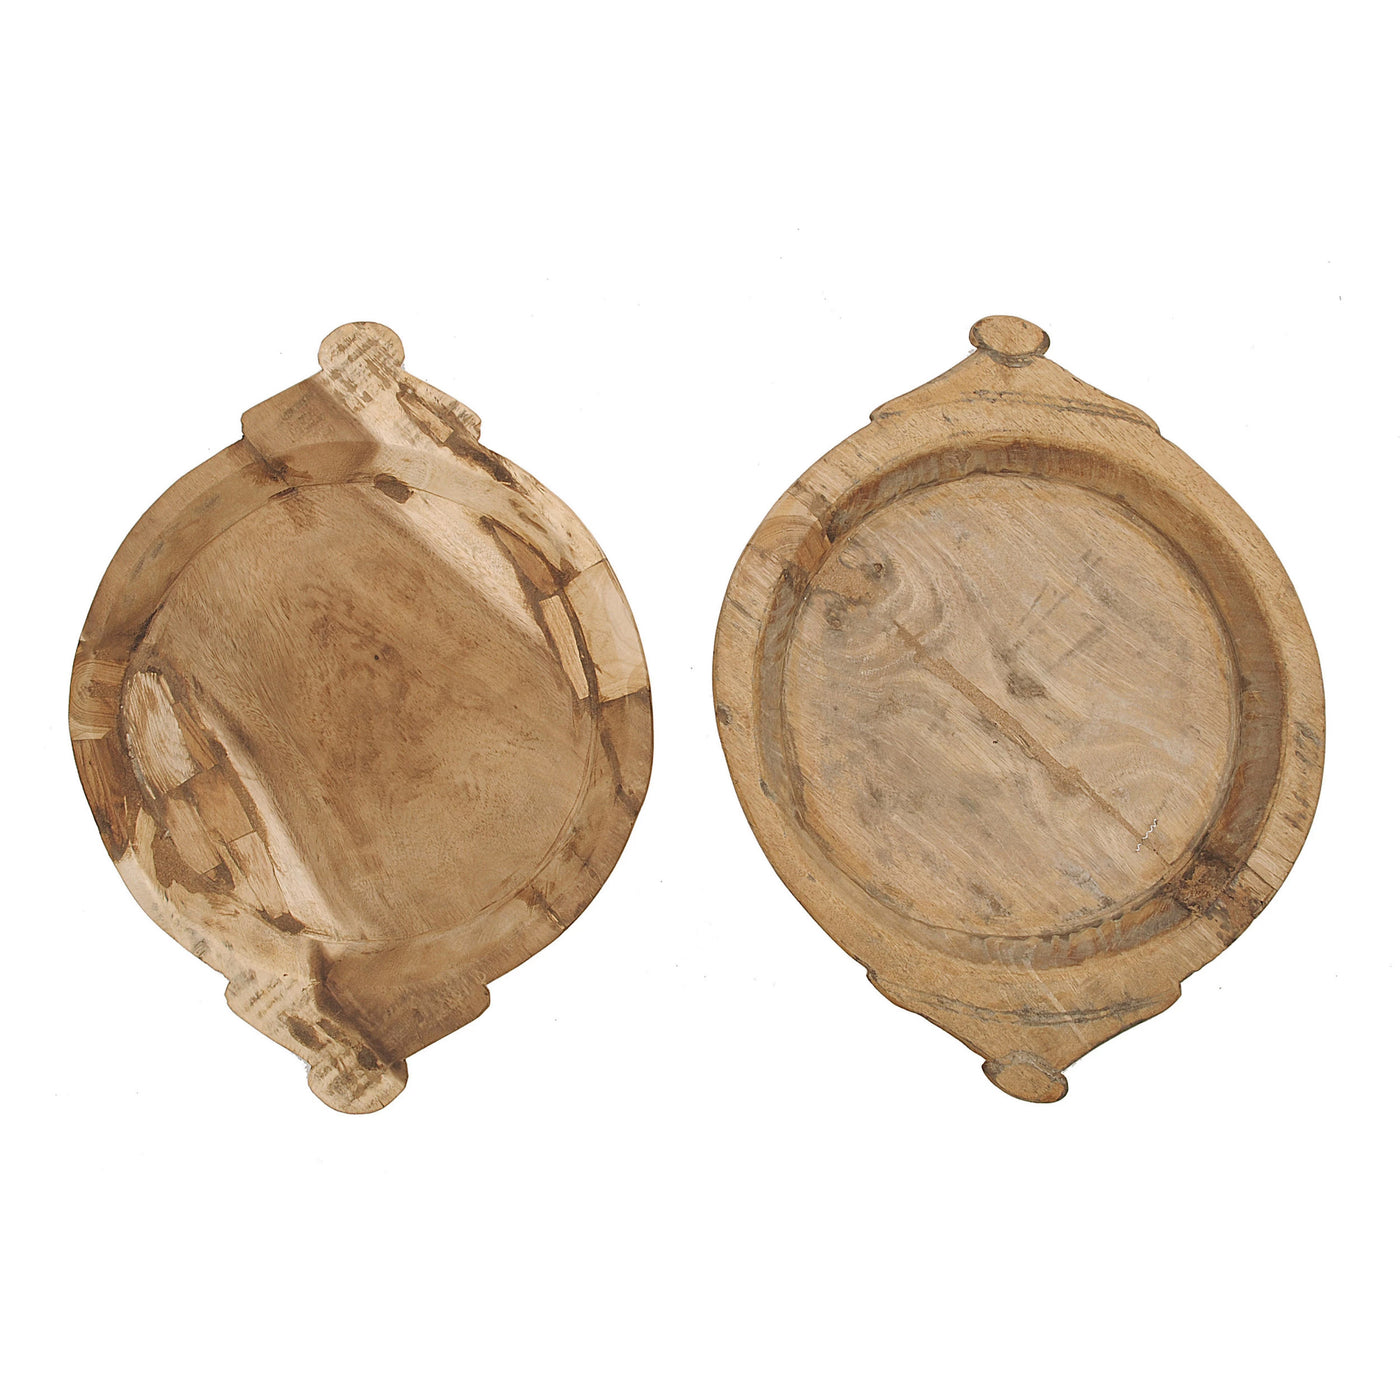 Large Hand Carved Wooden Bowl - Backordered